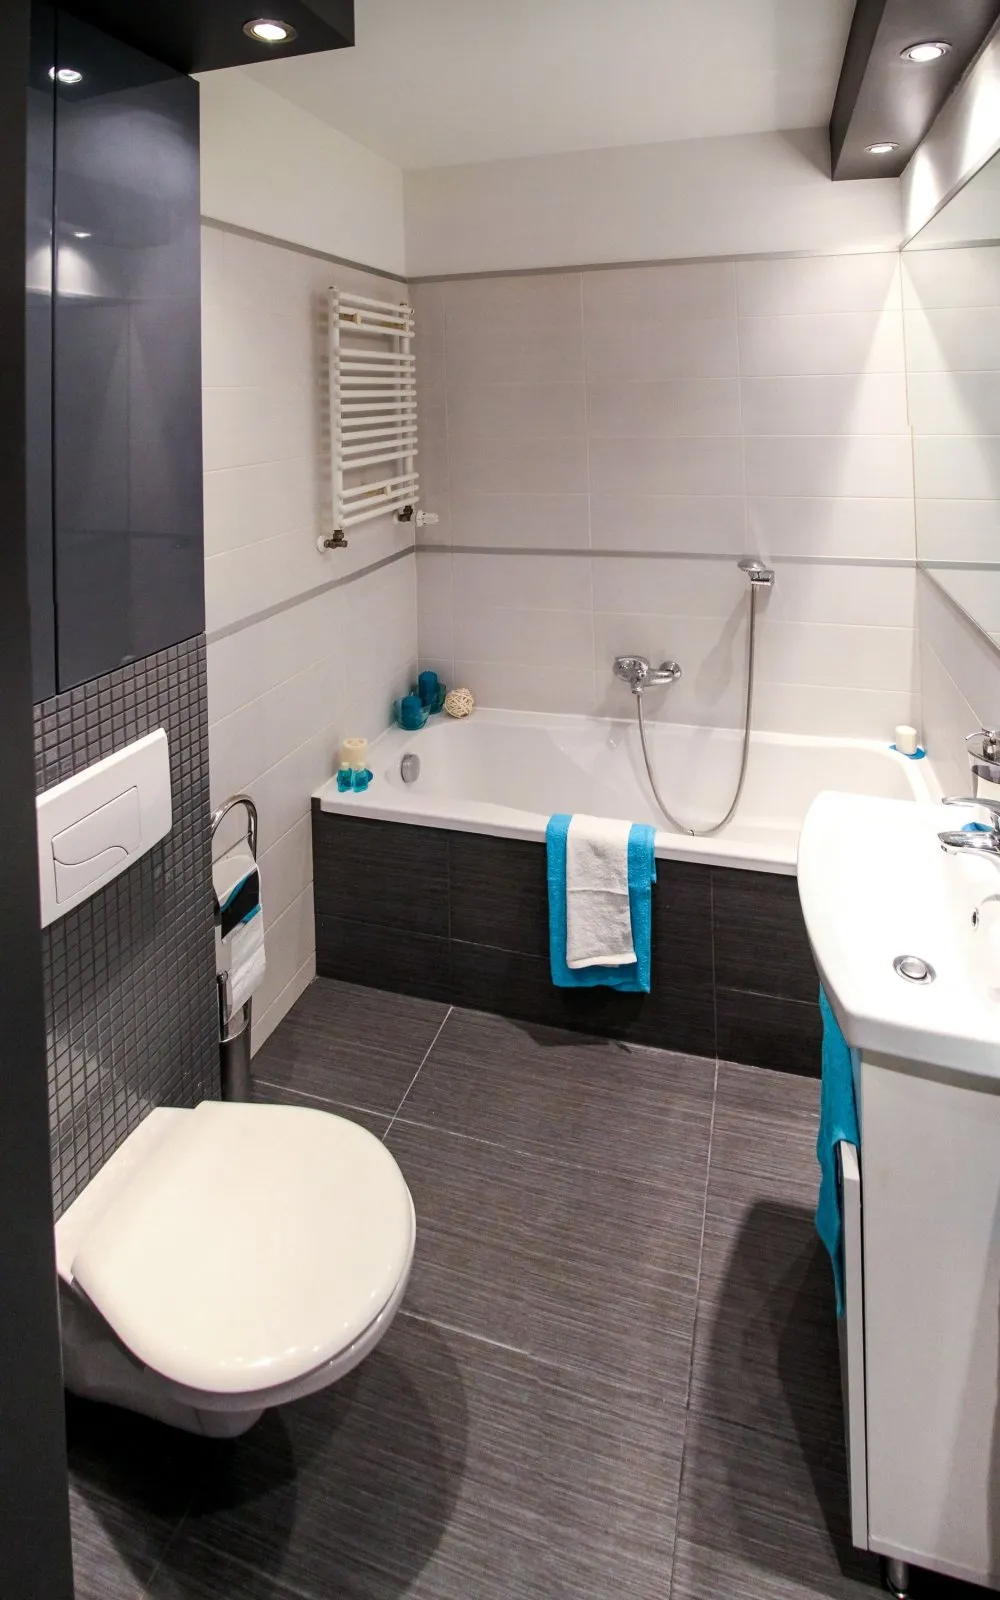 керамическая плитка на полу ванной комнаты, ванная комната с прямоугольной плиткой, темный пол ванной комнаты